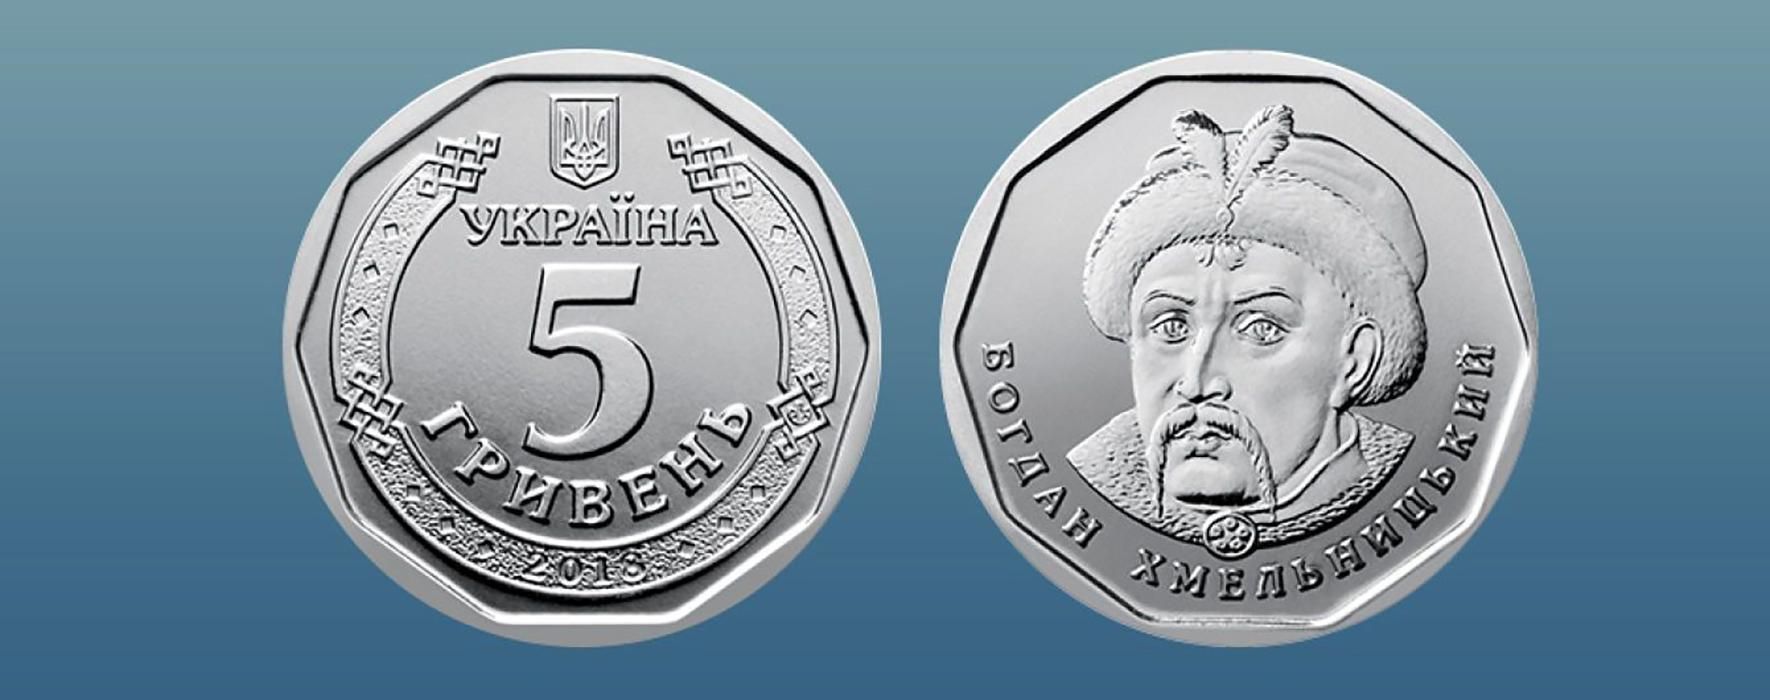 5 гривен монета